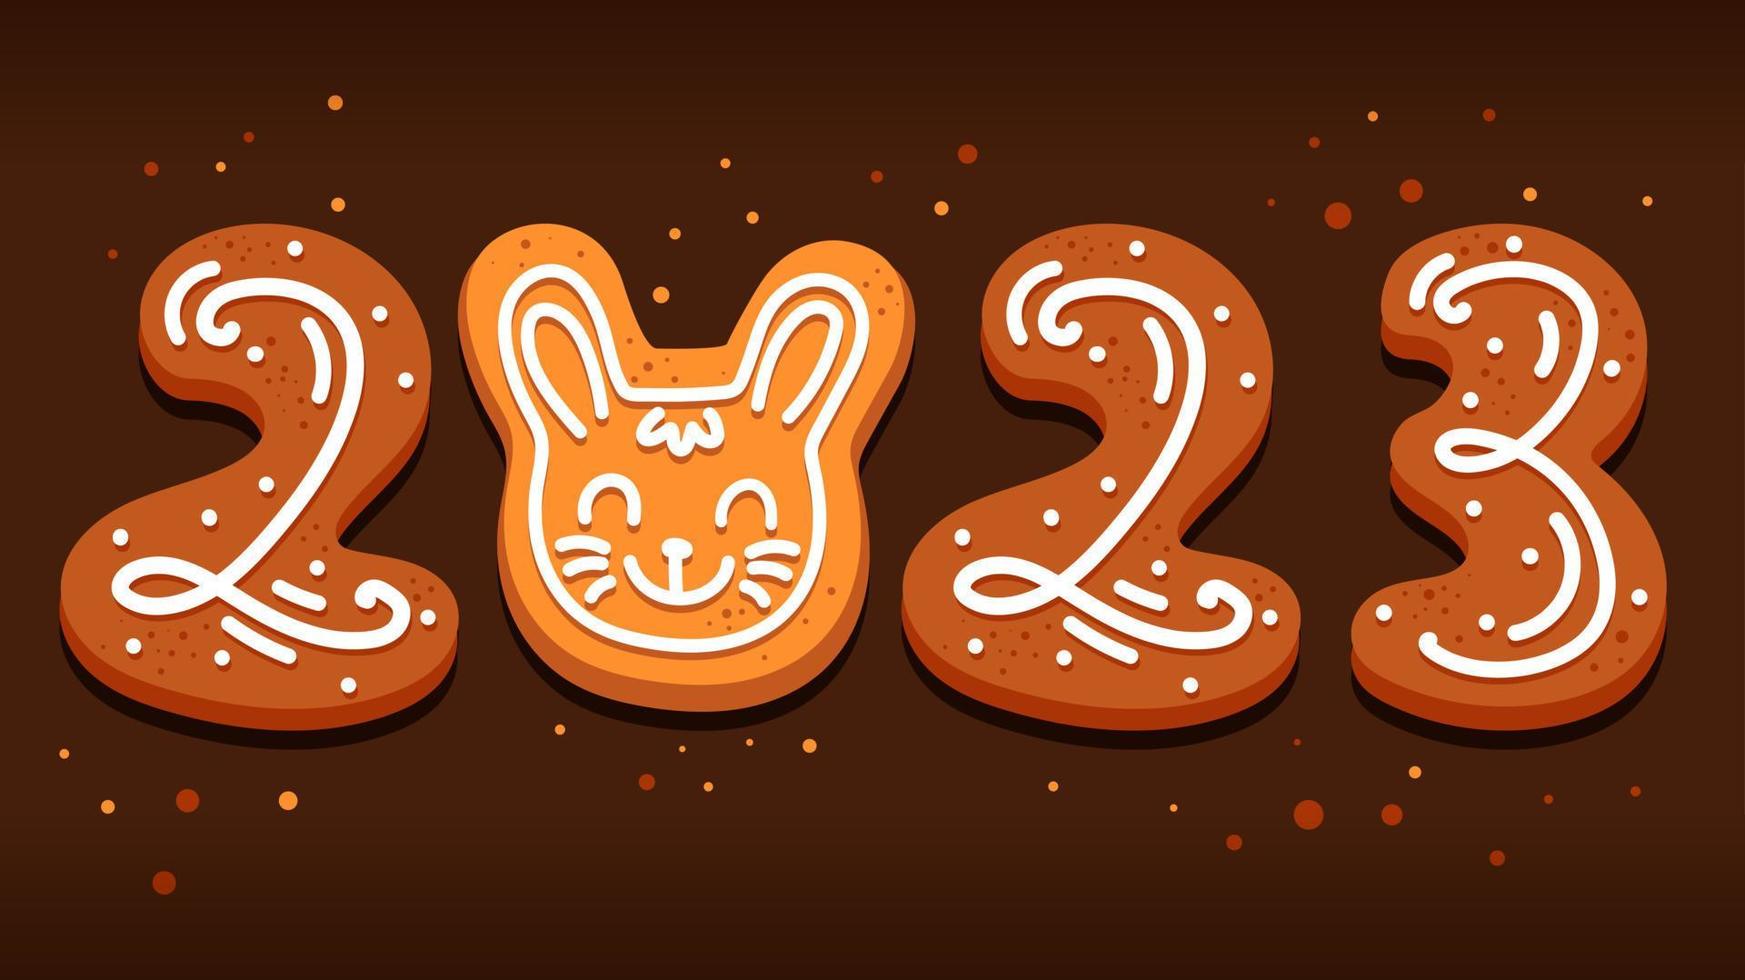 lebkuchen in form von zahlen und ein kaninchensymbol von 2023 kaninchen im cartoon-stil vektor